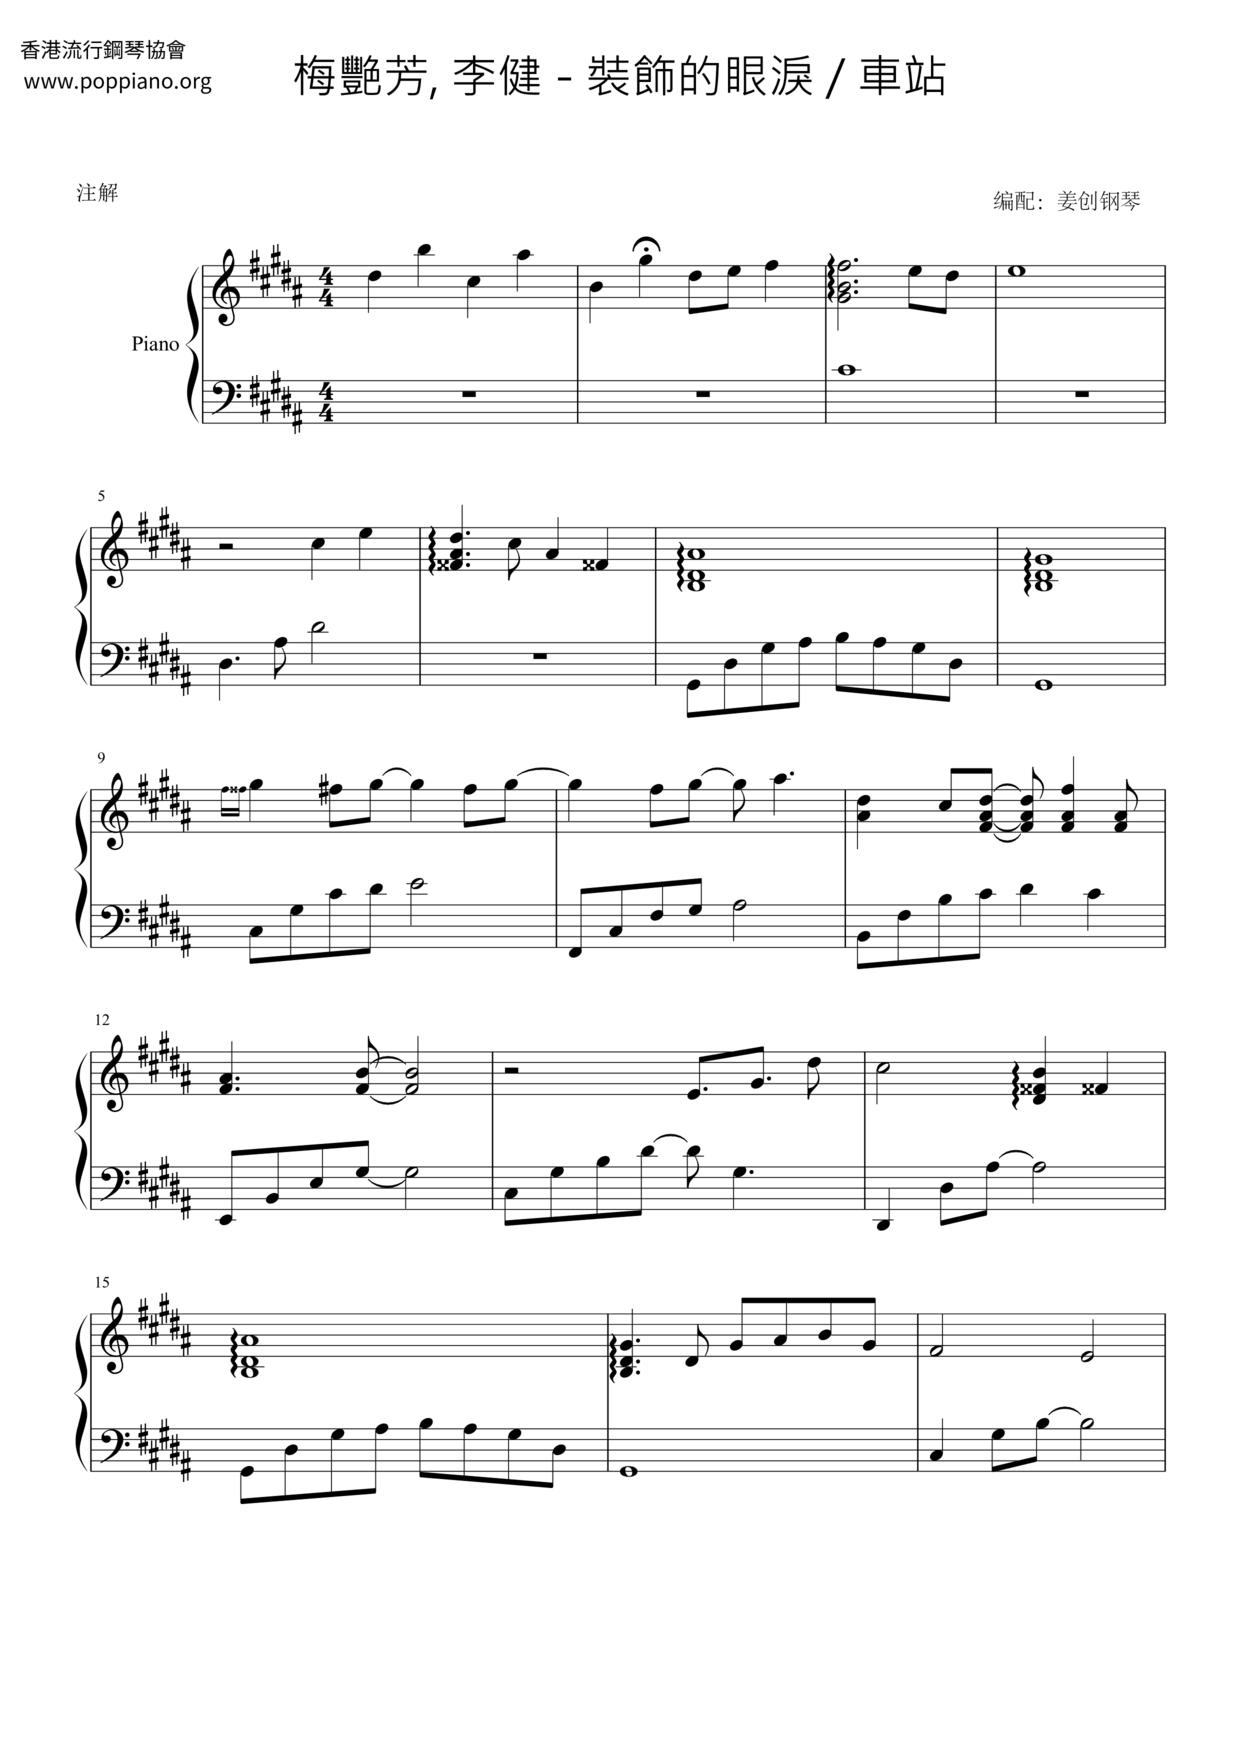 李健-车站 琴谱/五线谱pdf-香港流行钢琴协会琴谱下载